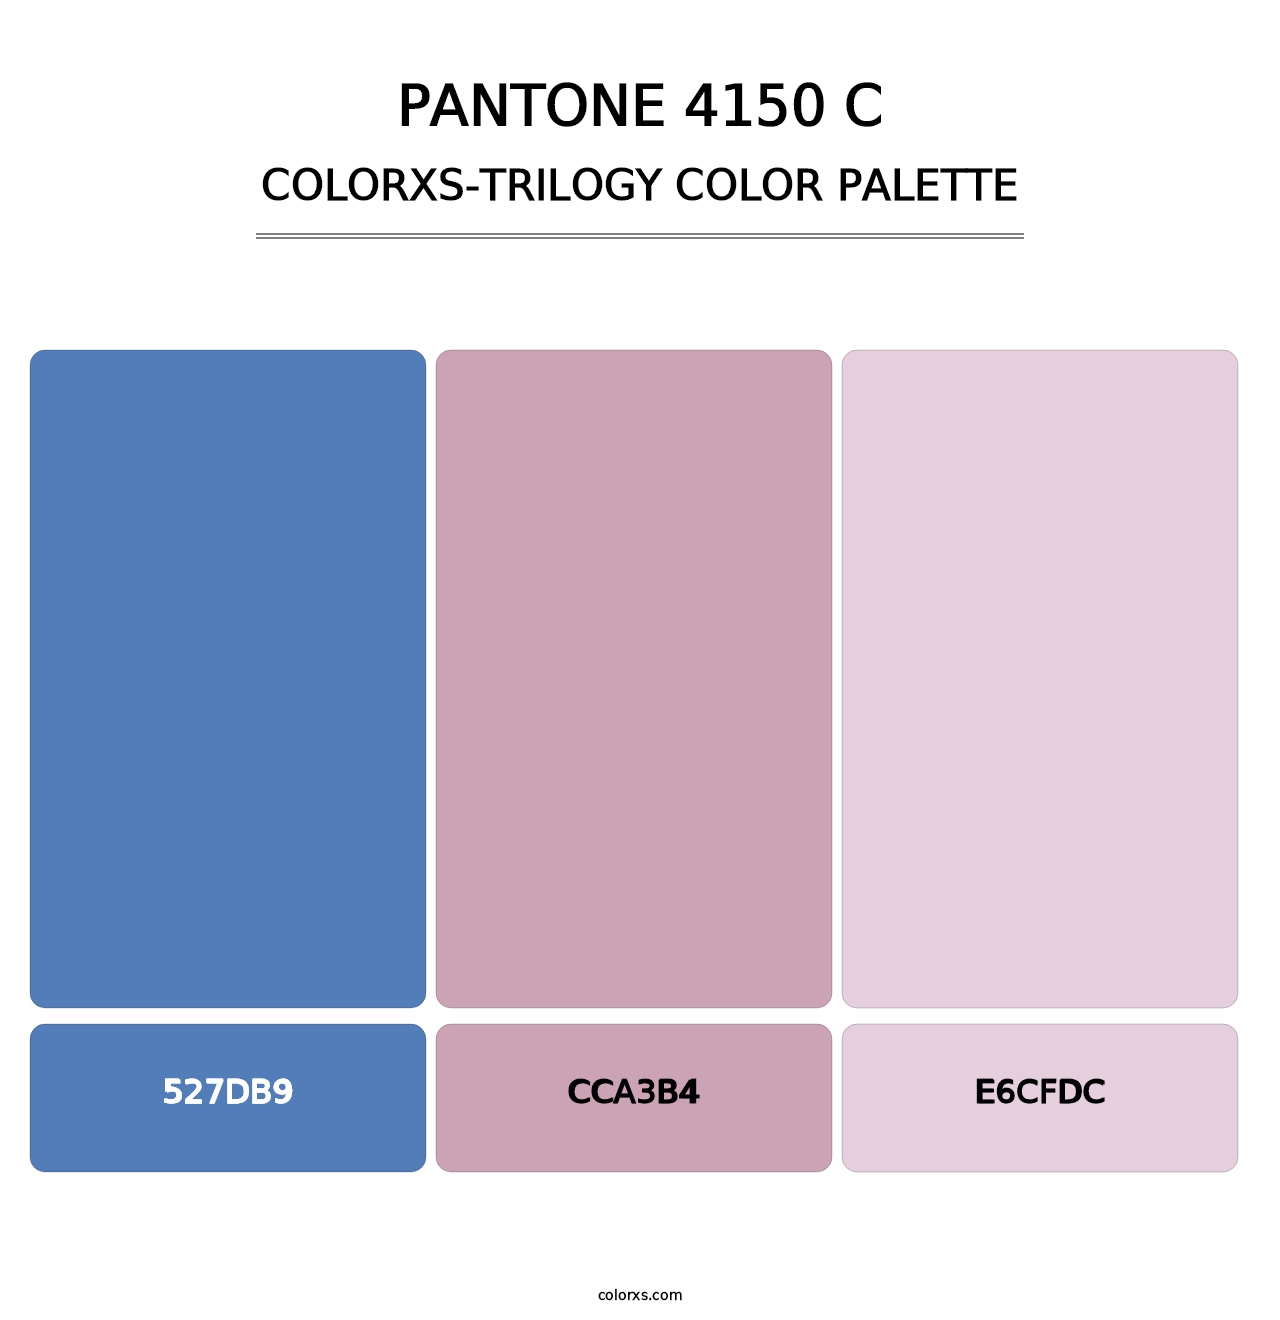 PANTONE 4150 C - Colorxs Trilogy Palette